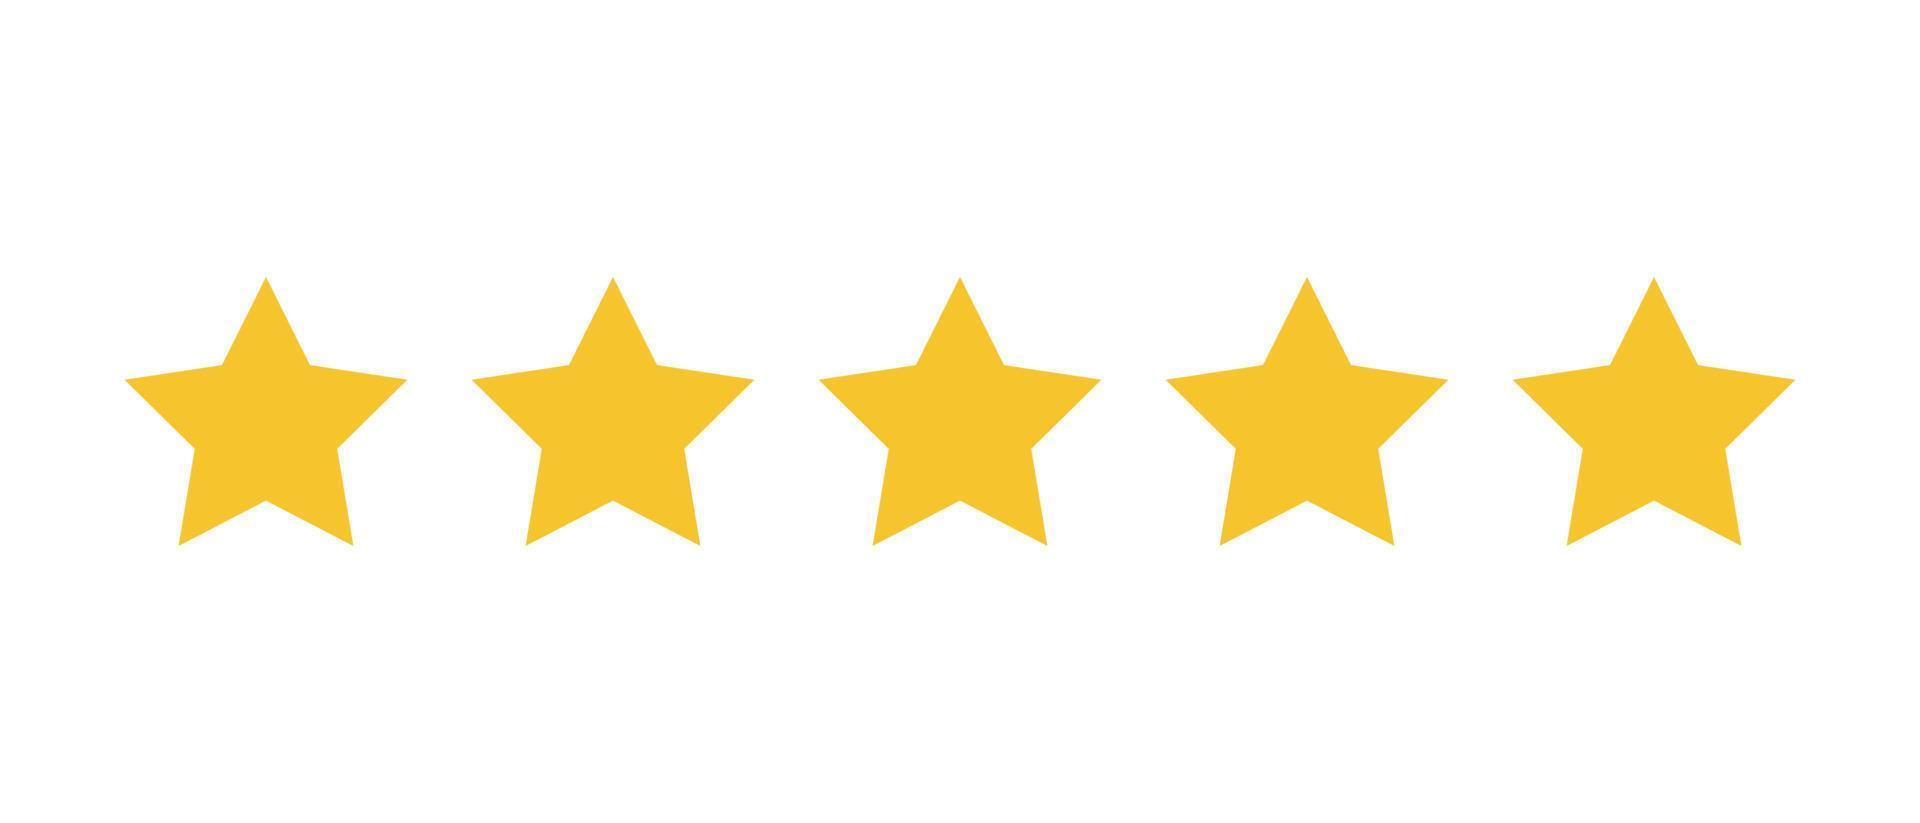 revisão de classificação de produto do cliente de cinco estrelas ícone de vetor de mercado on-line